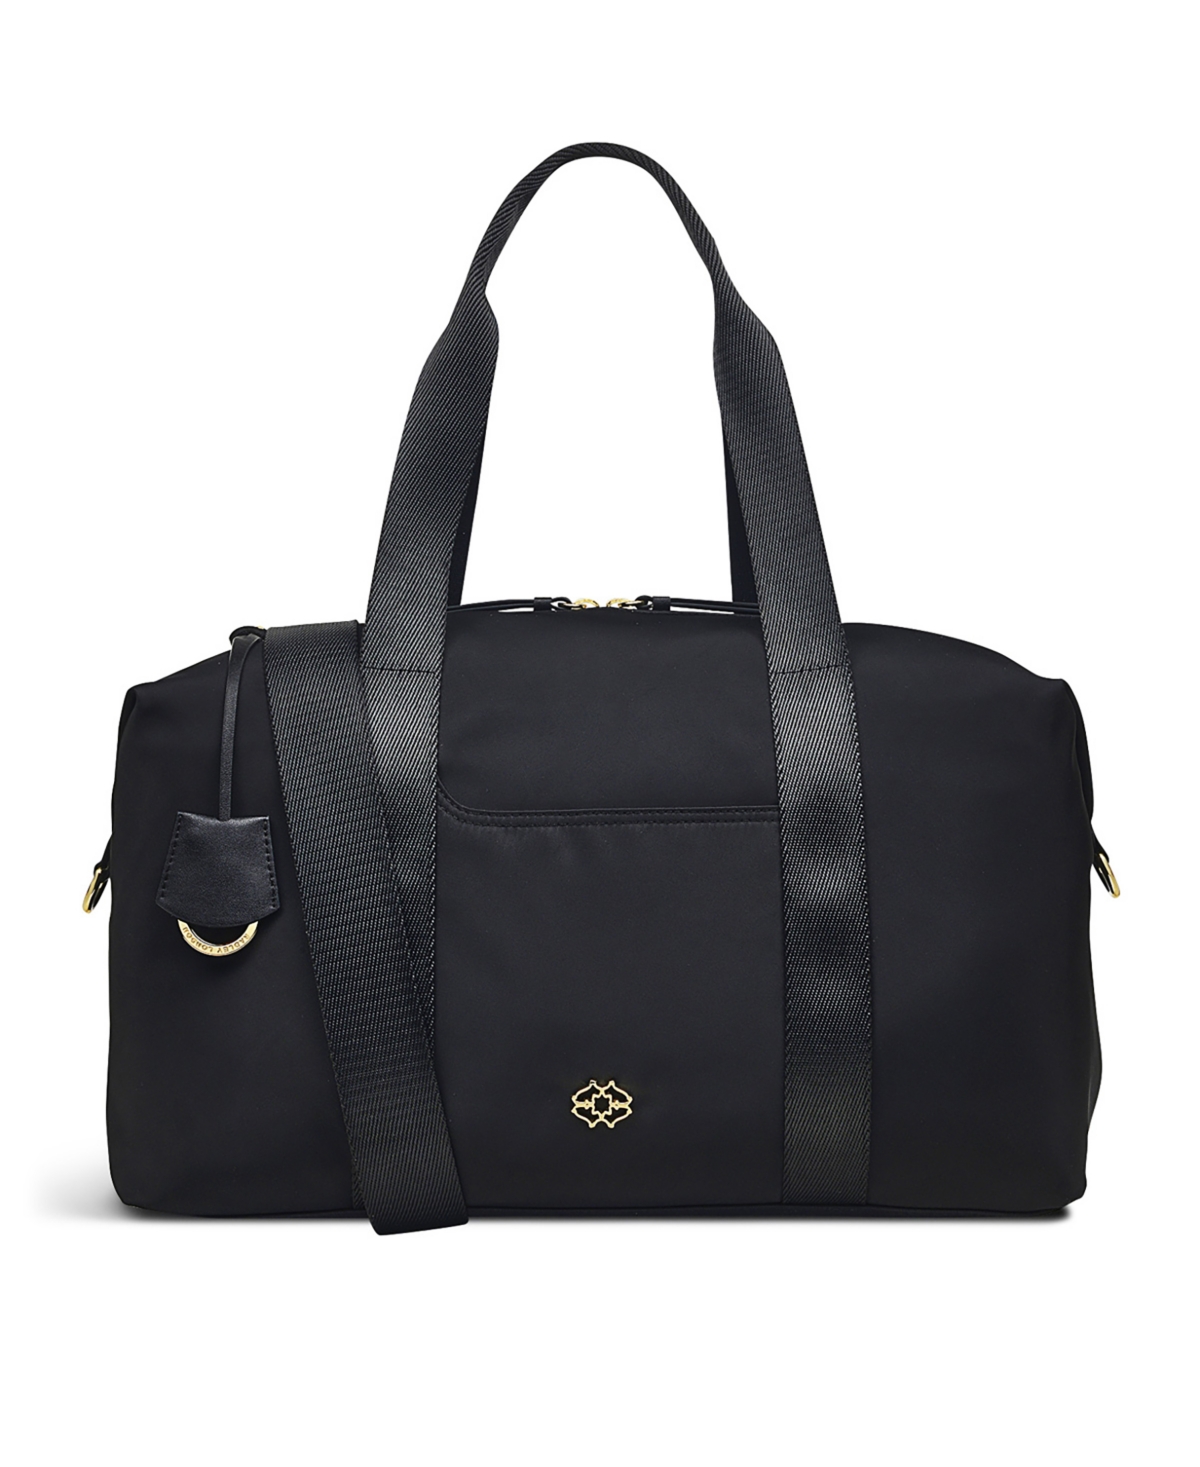 Women's Radley 24/7 Zip Top Travel Bag - Black